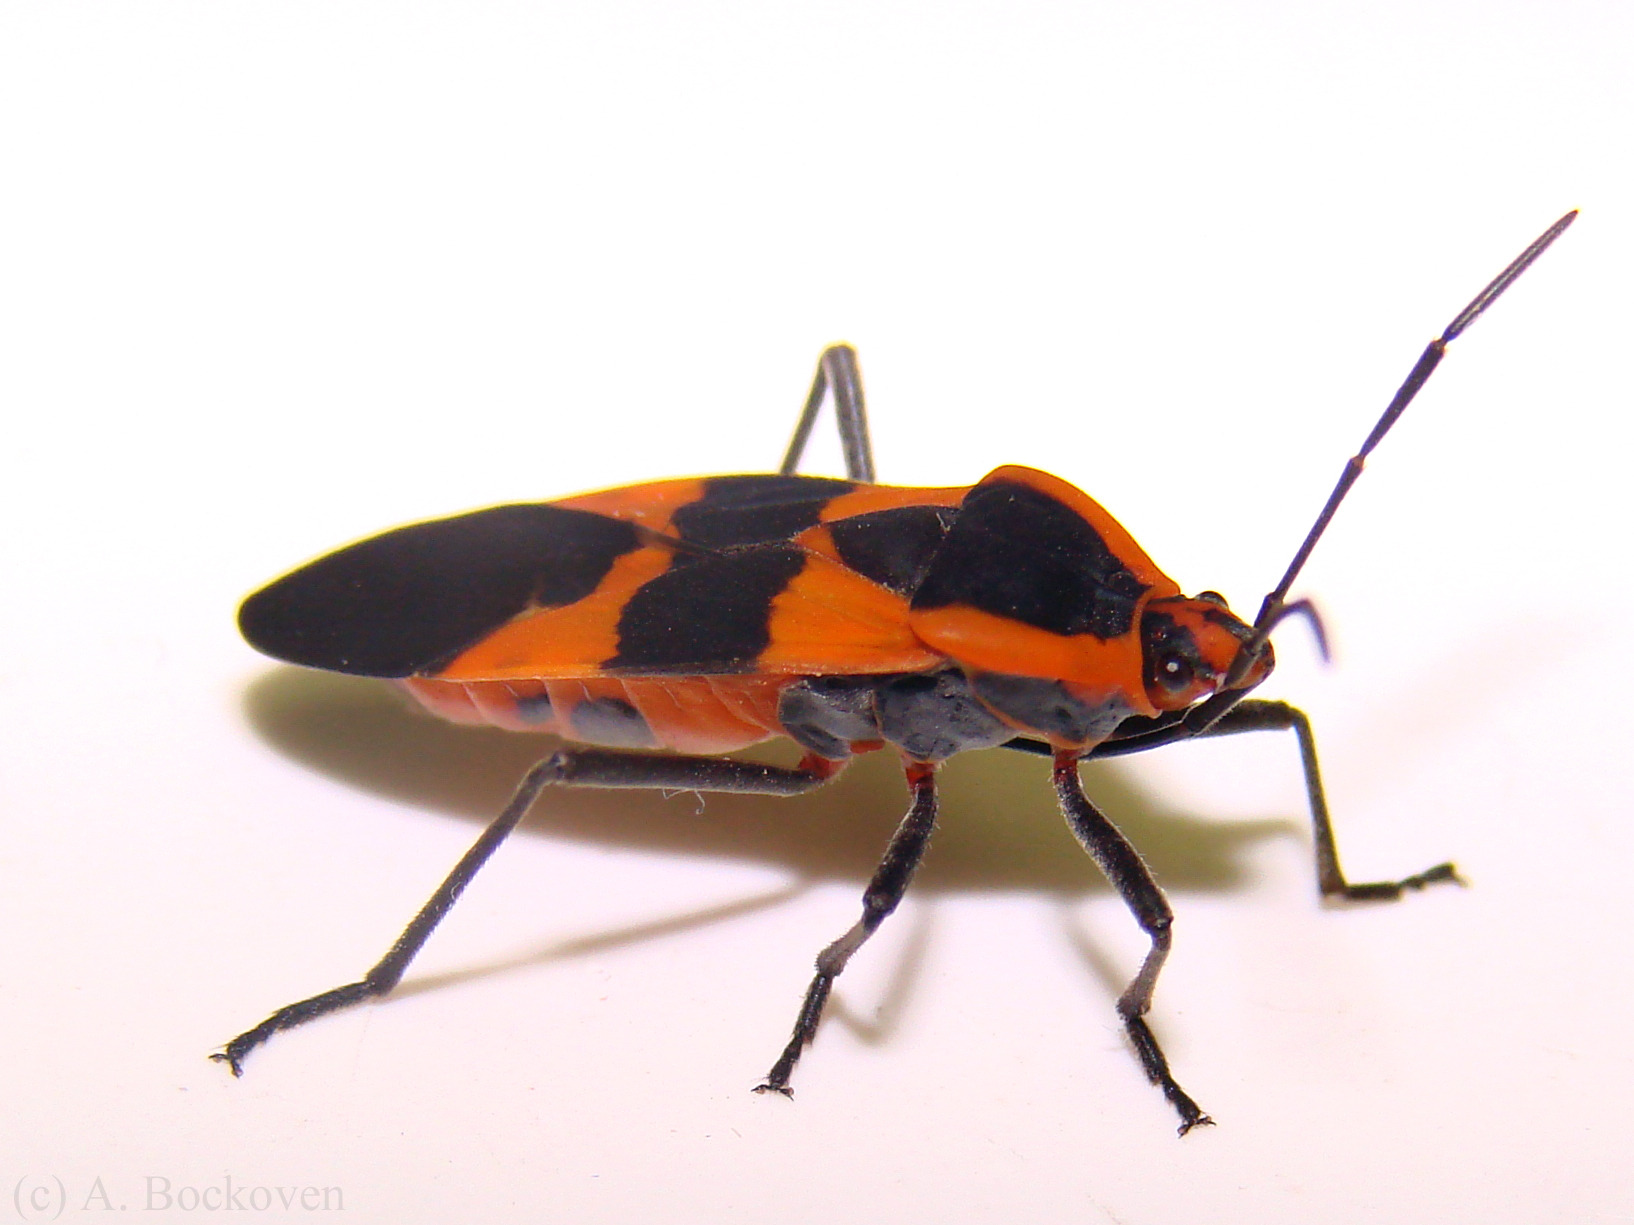 15-milkweed-beetle-facts